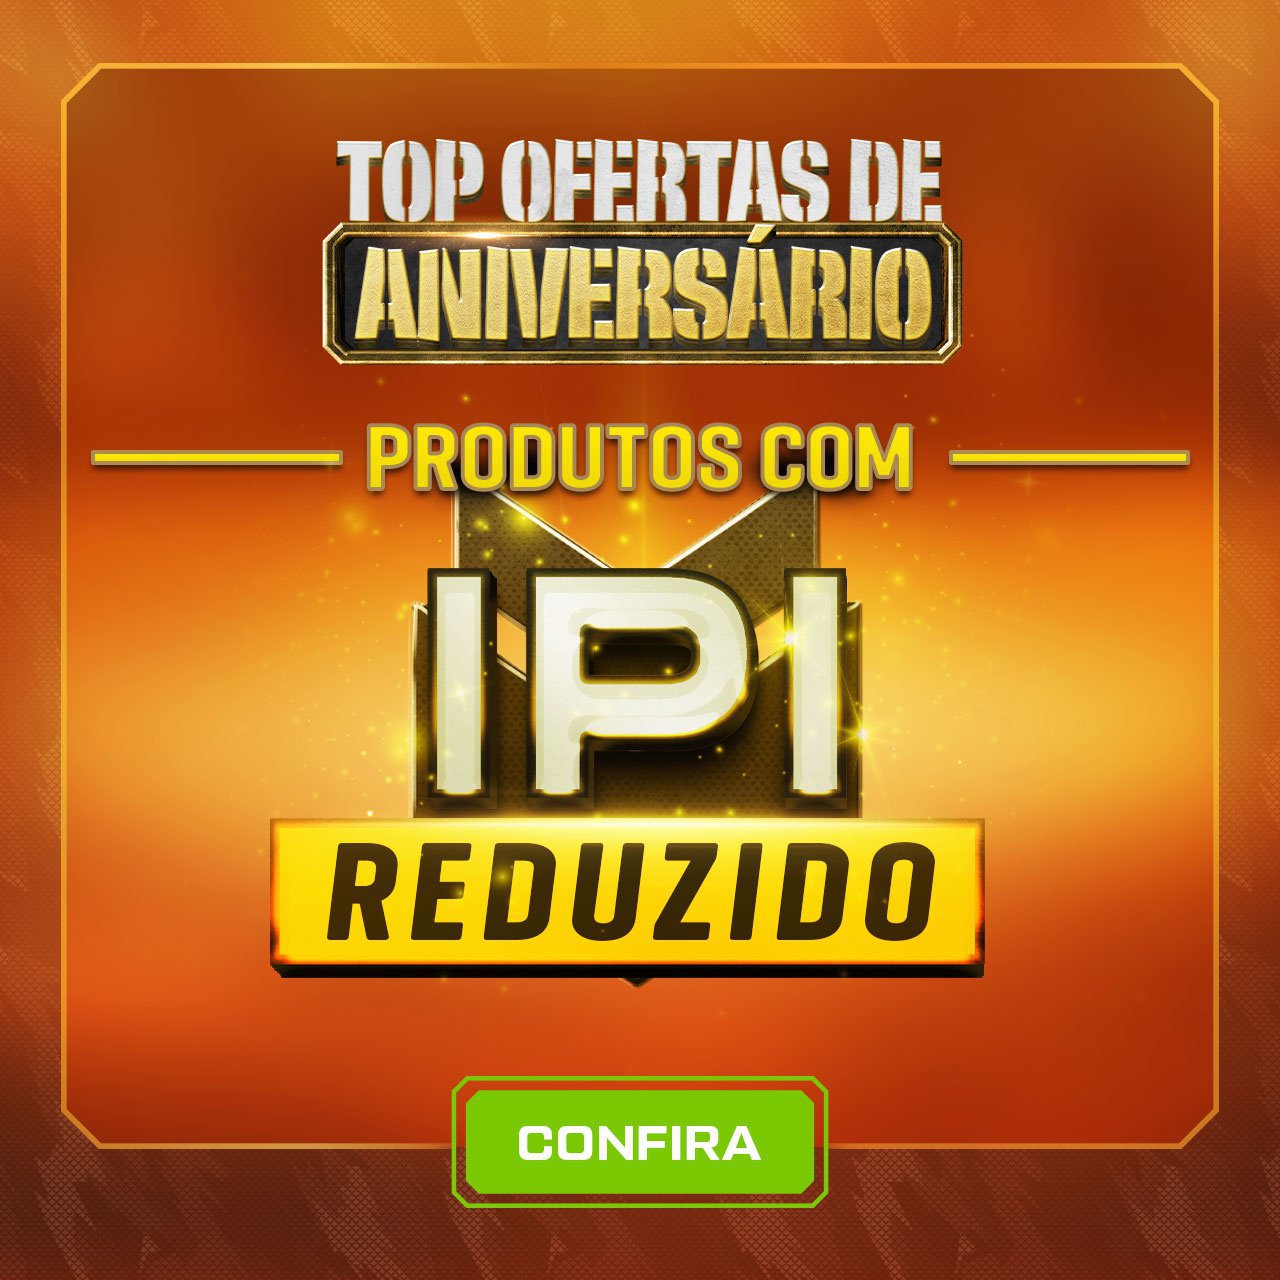 TOP Ofertas de Aniversário - Produtos com IPI Reduzido